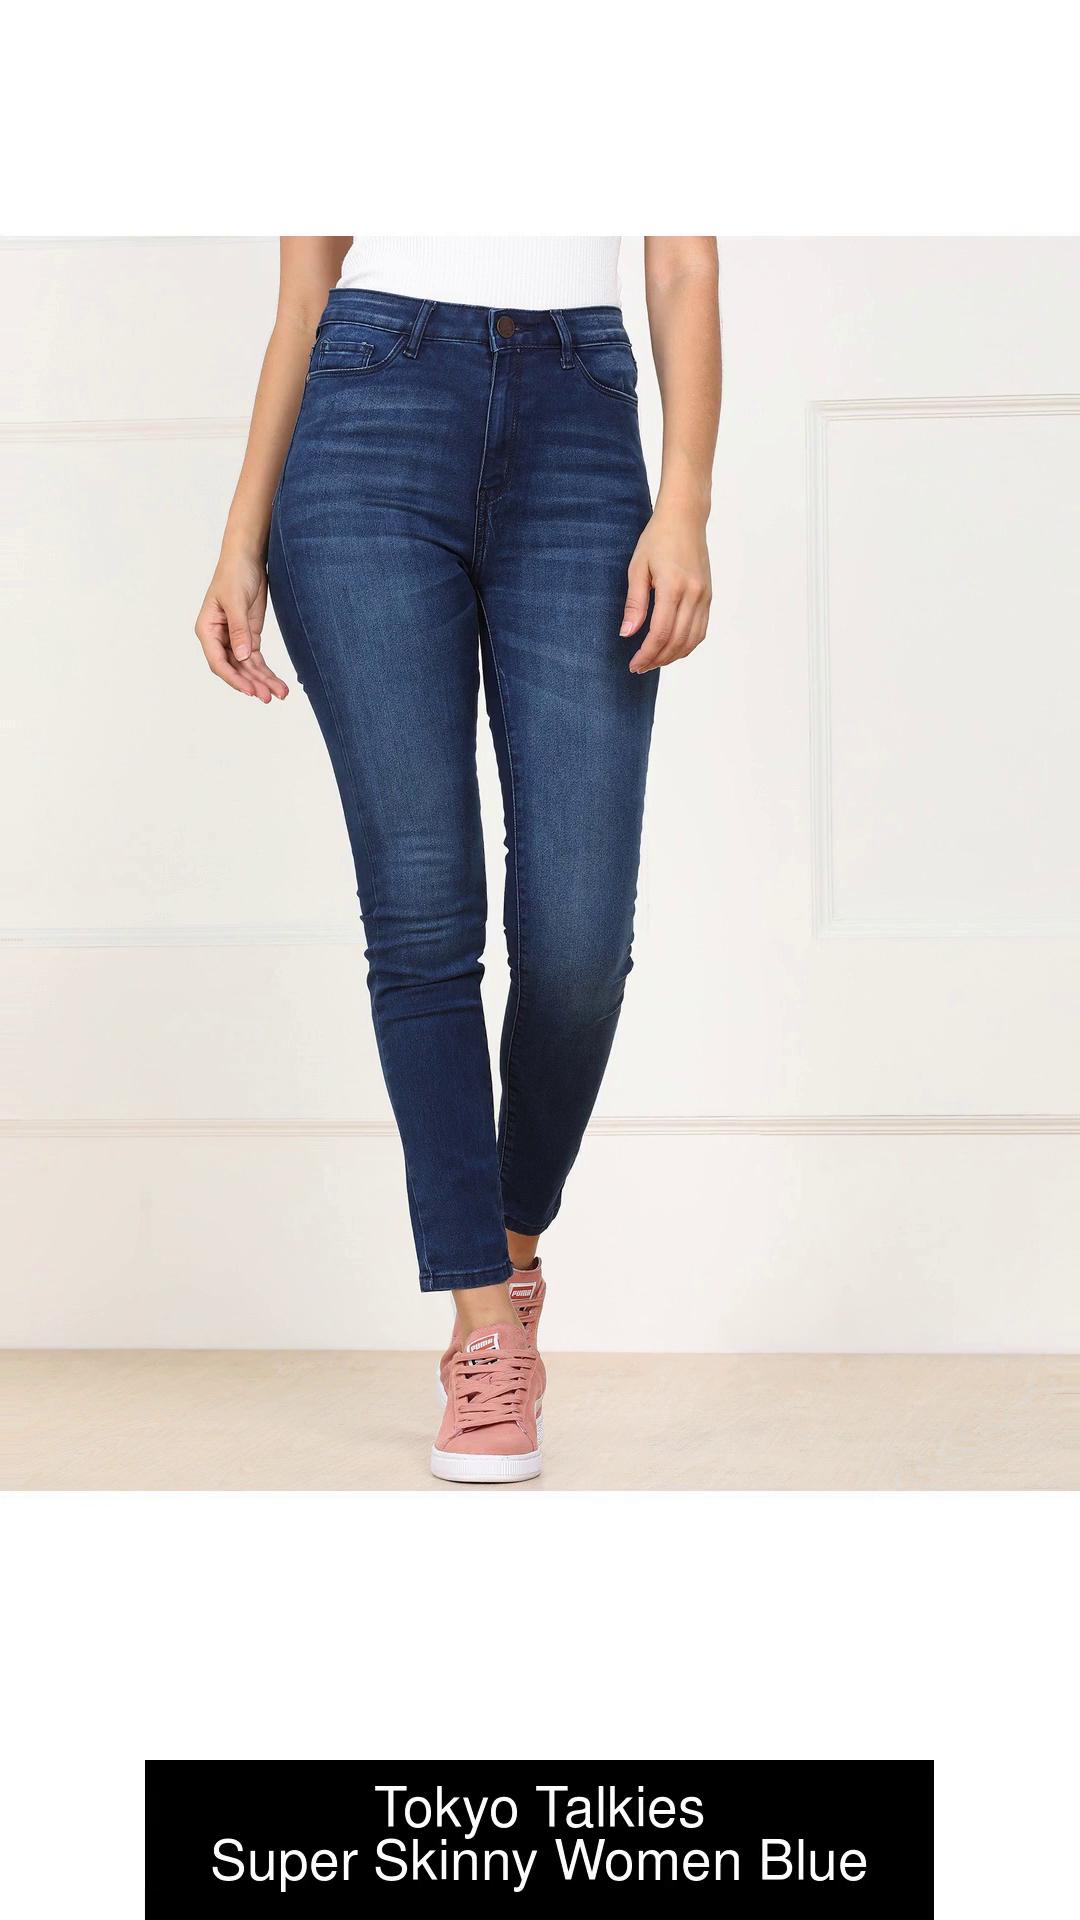 Tokyo Talkies Super Skinny Women Blue Jeans - Buy Tokyo Talkies